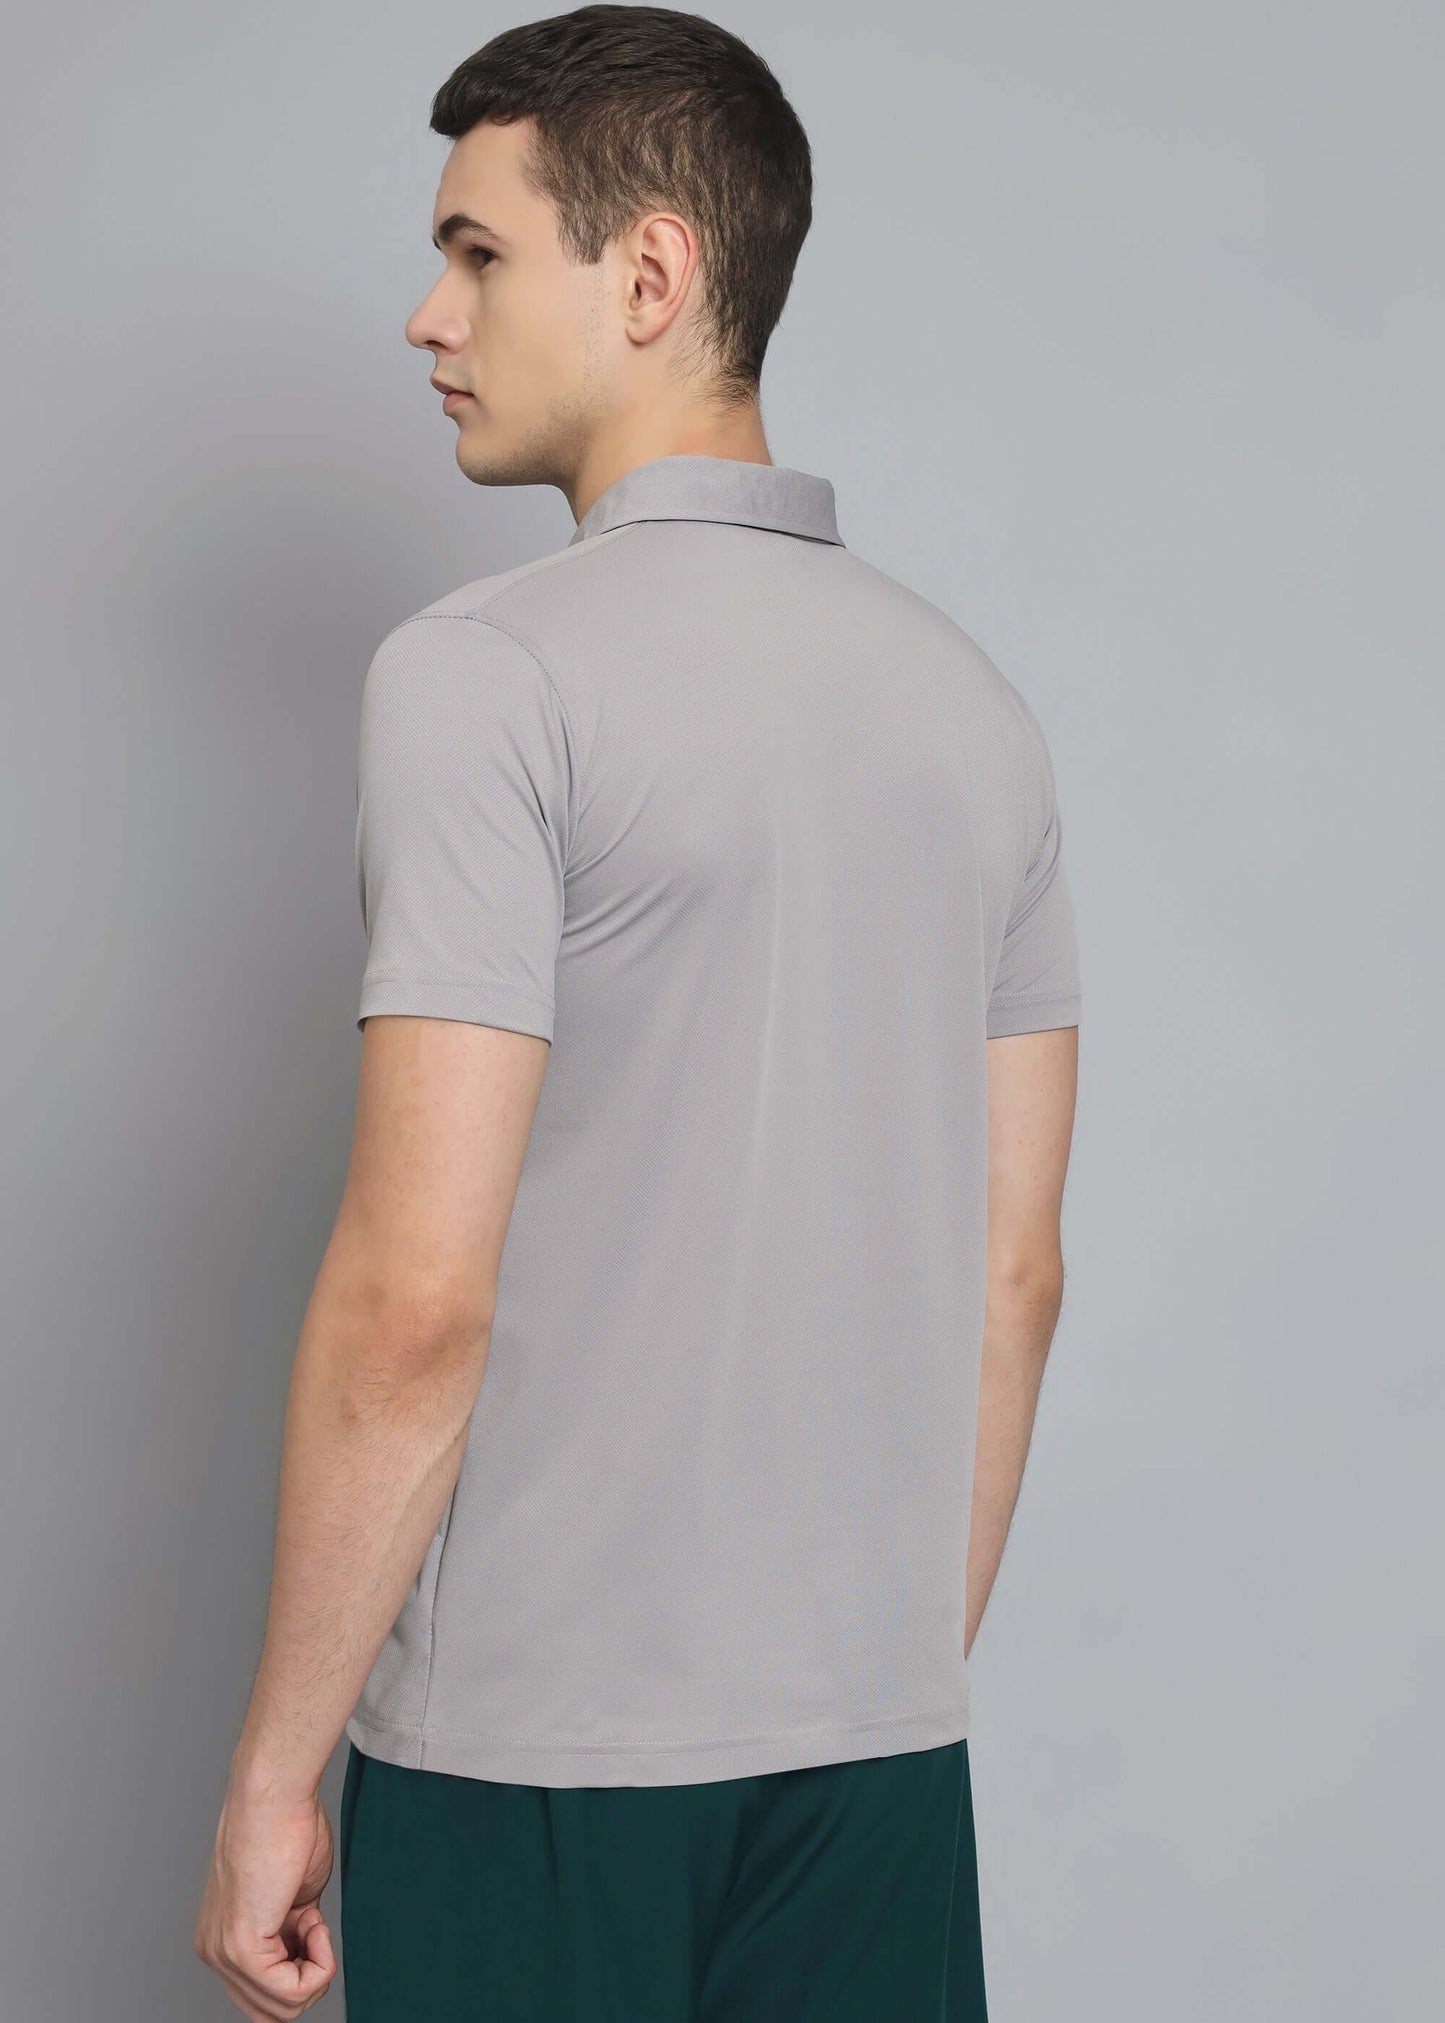 "Breathable Fabric Polo Shirt - Half Sleeve"